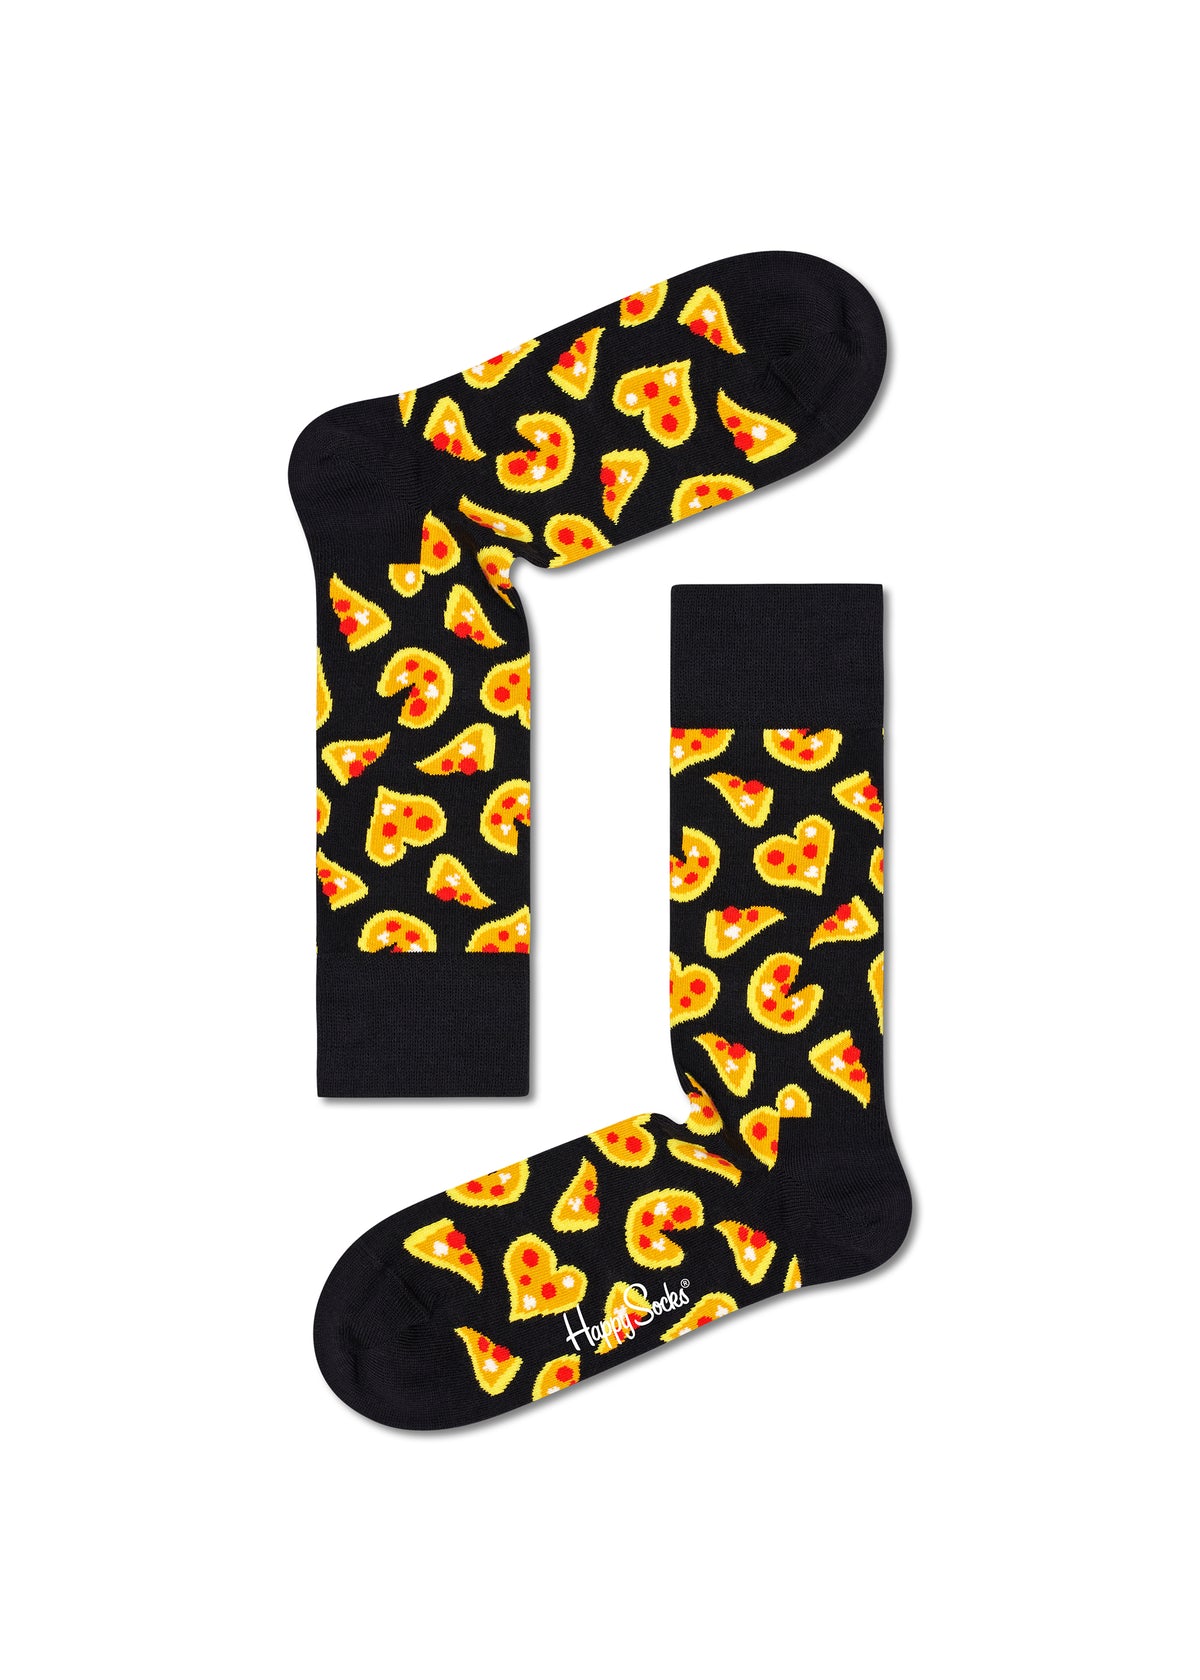 Adult socks - Pizza Love